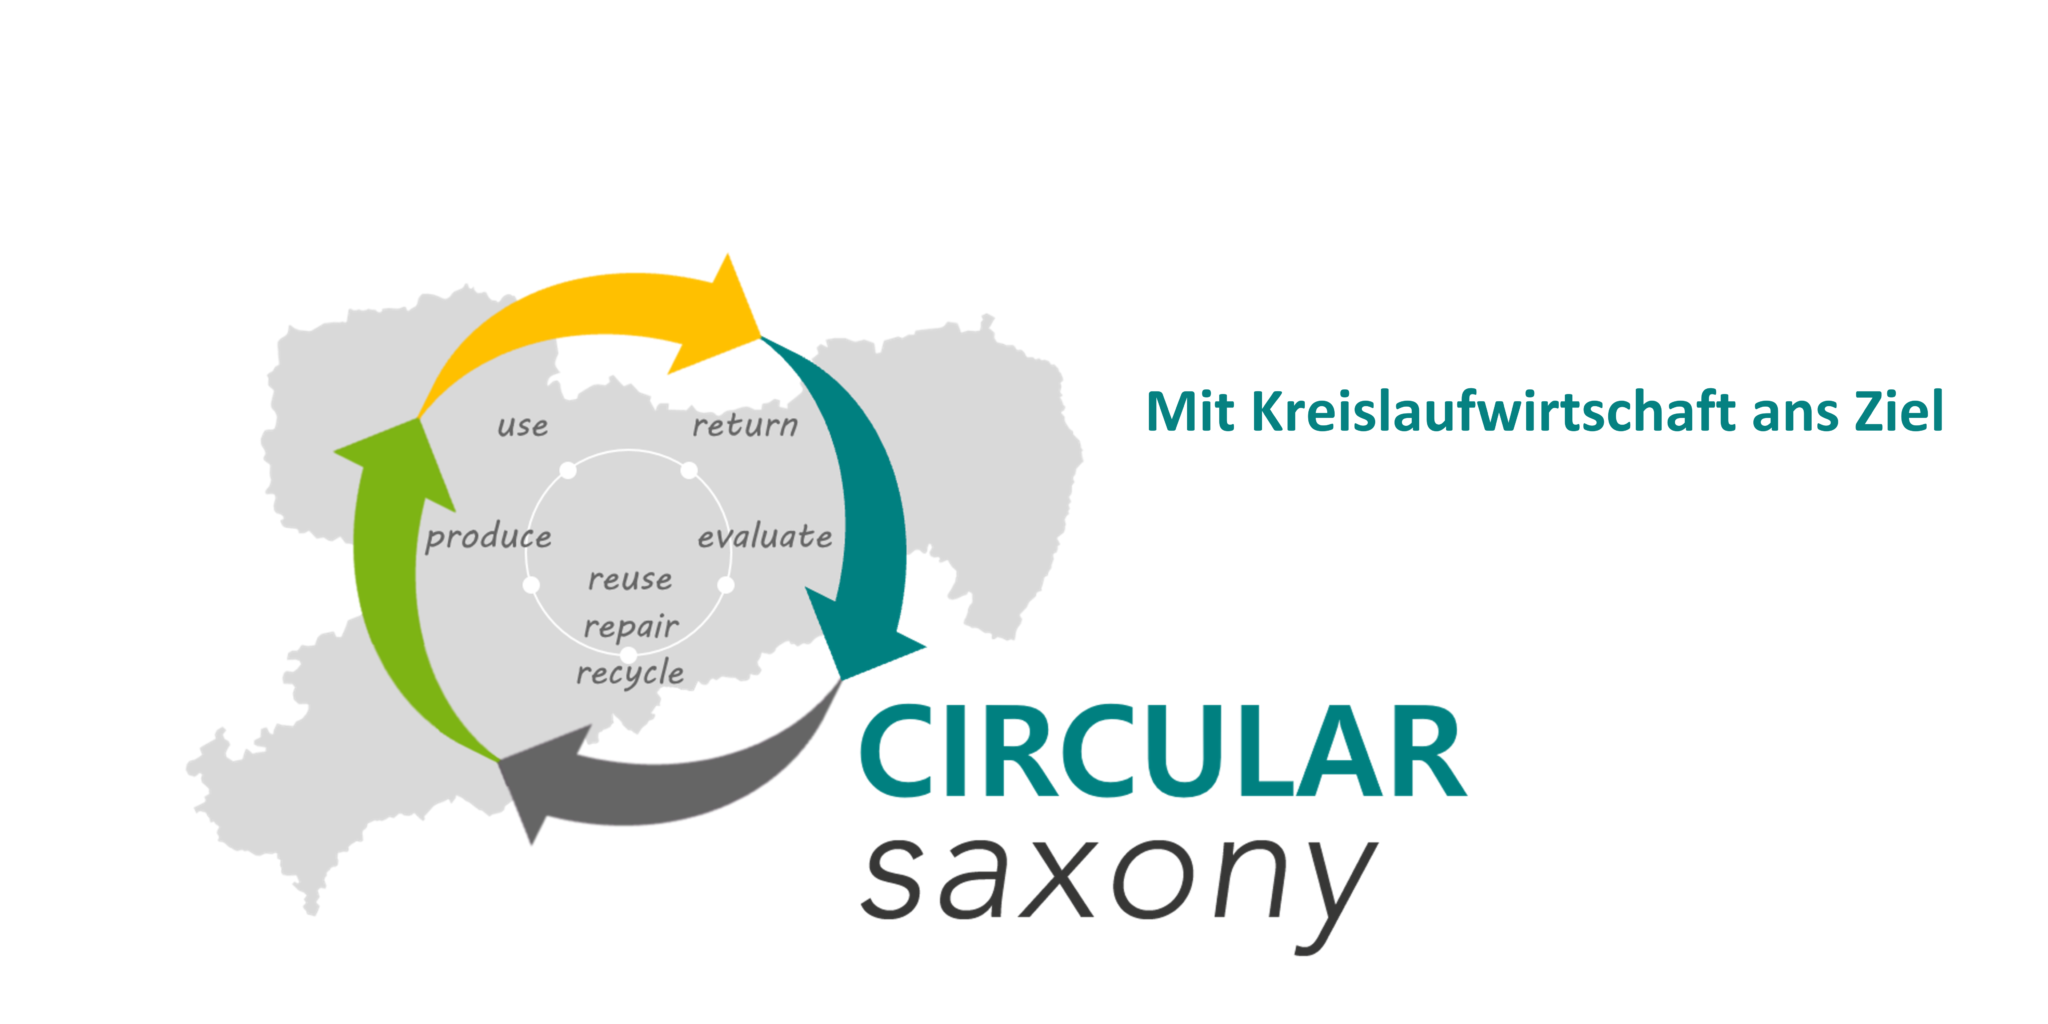 Circular Saxony – Mit Kreislaufwirtschaft ans Ziel